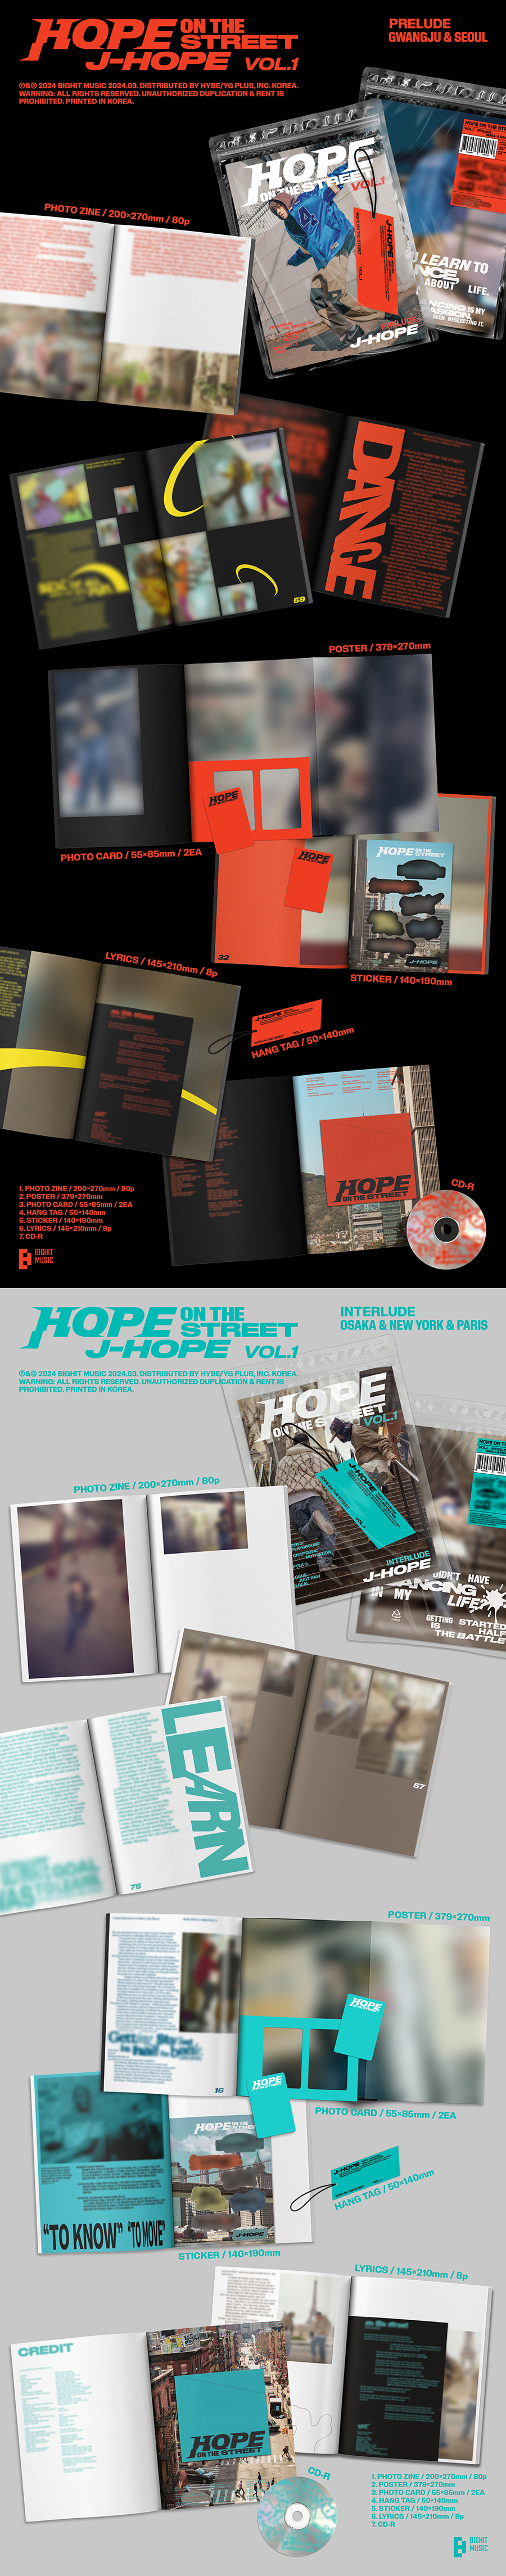 제이홉 - HOPE ON THE STREET VOL.1 []